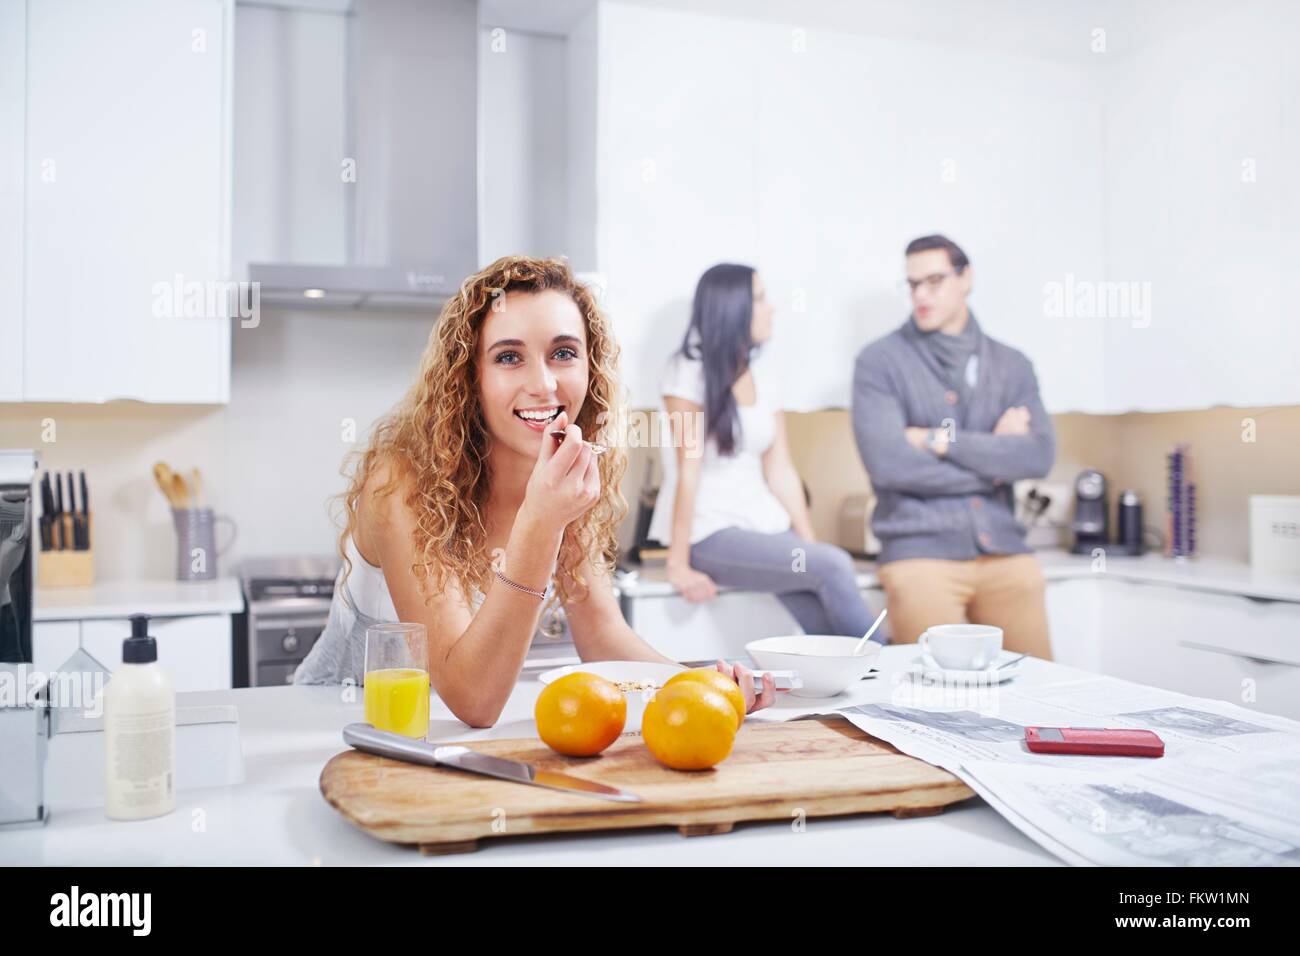 Ritratto di giovane donna di mangiare cereali per la colazione al banco di cucina Foto Stock